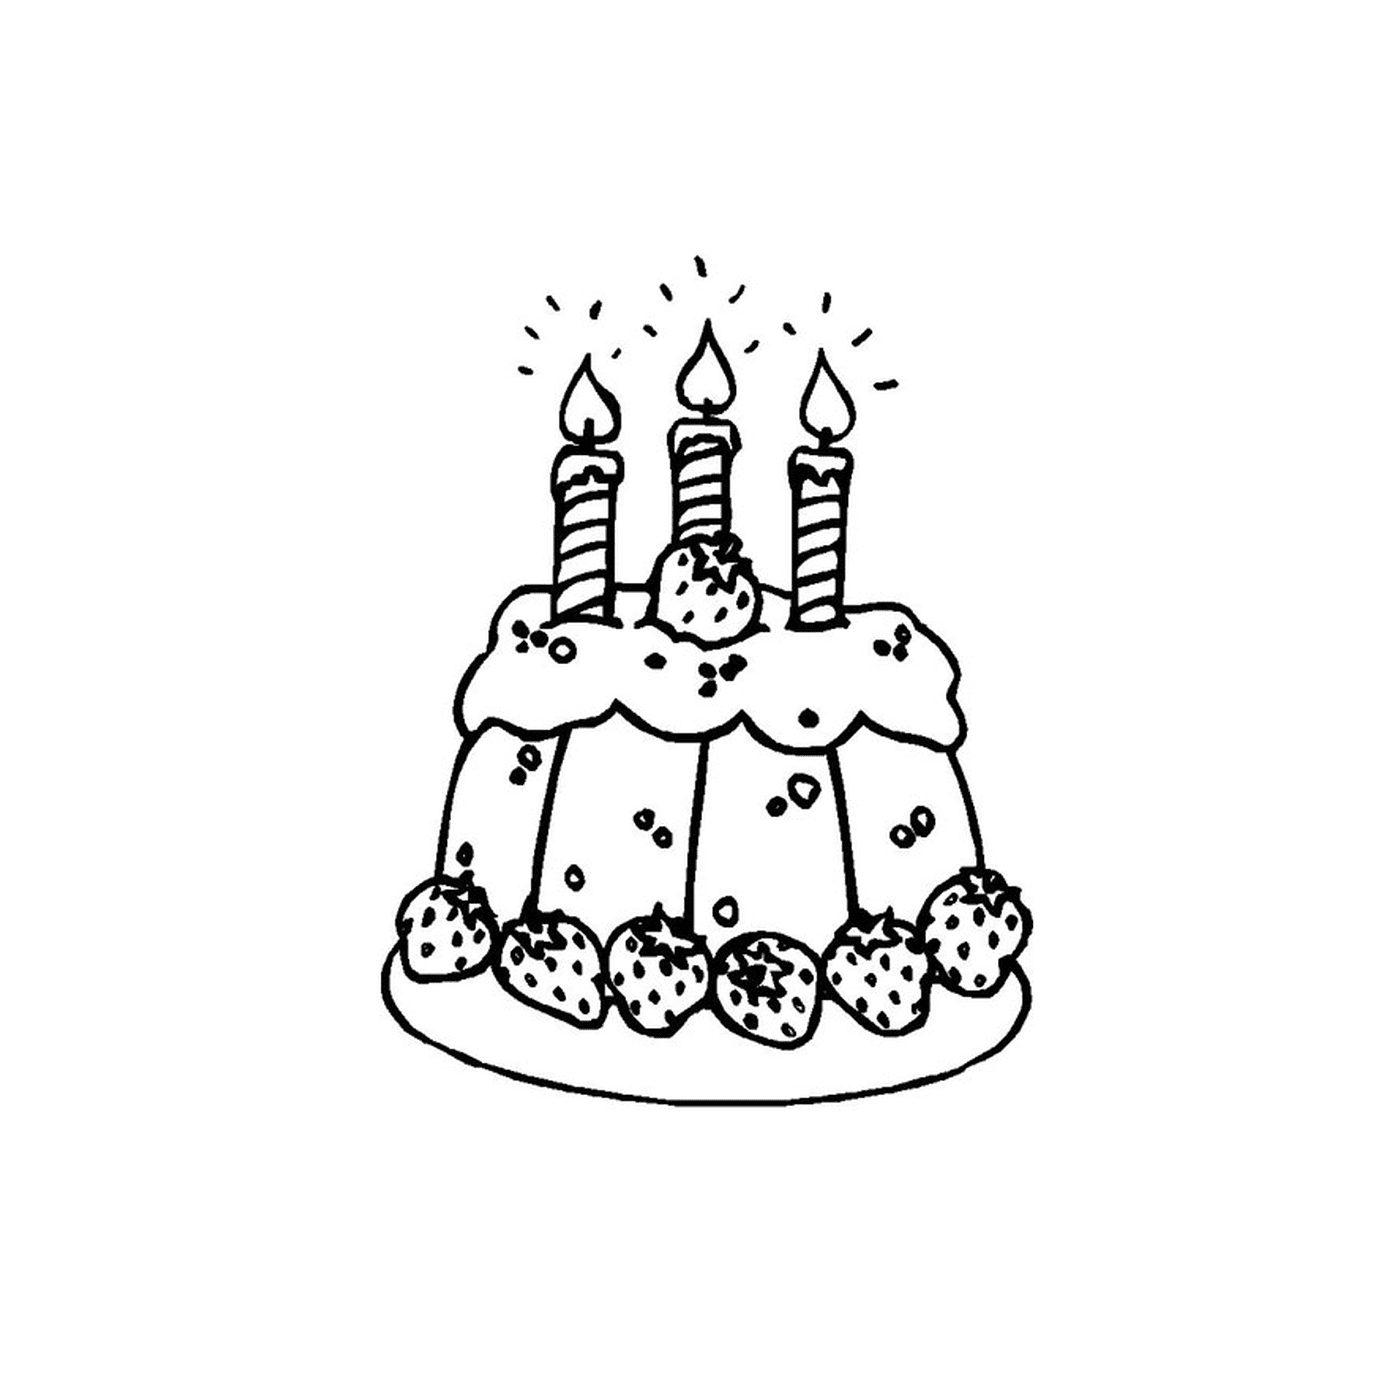   un gâteau avec trois bougies allumées 